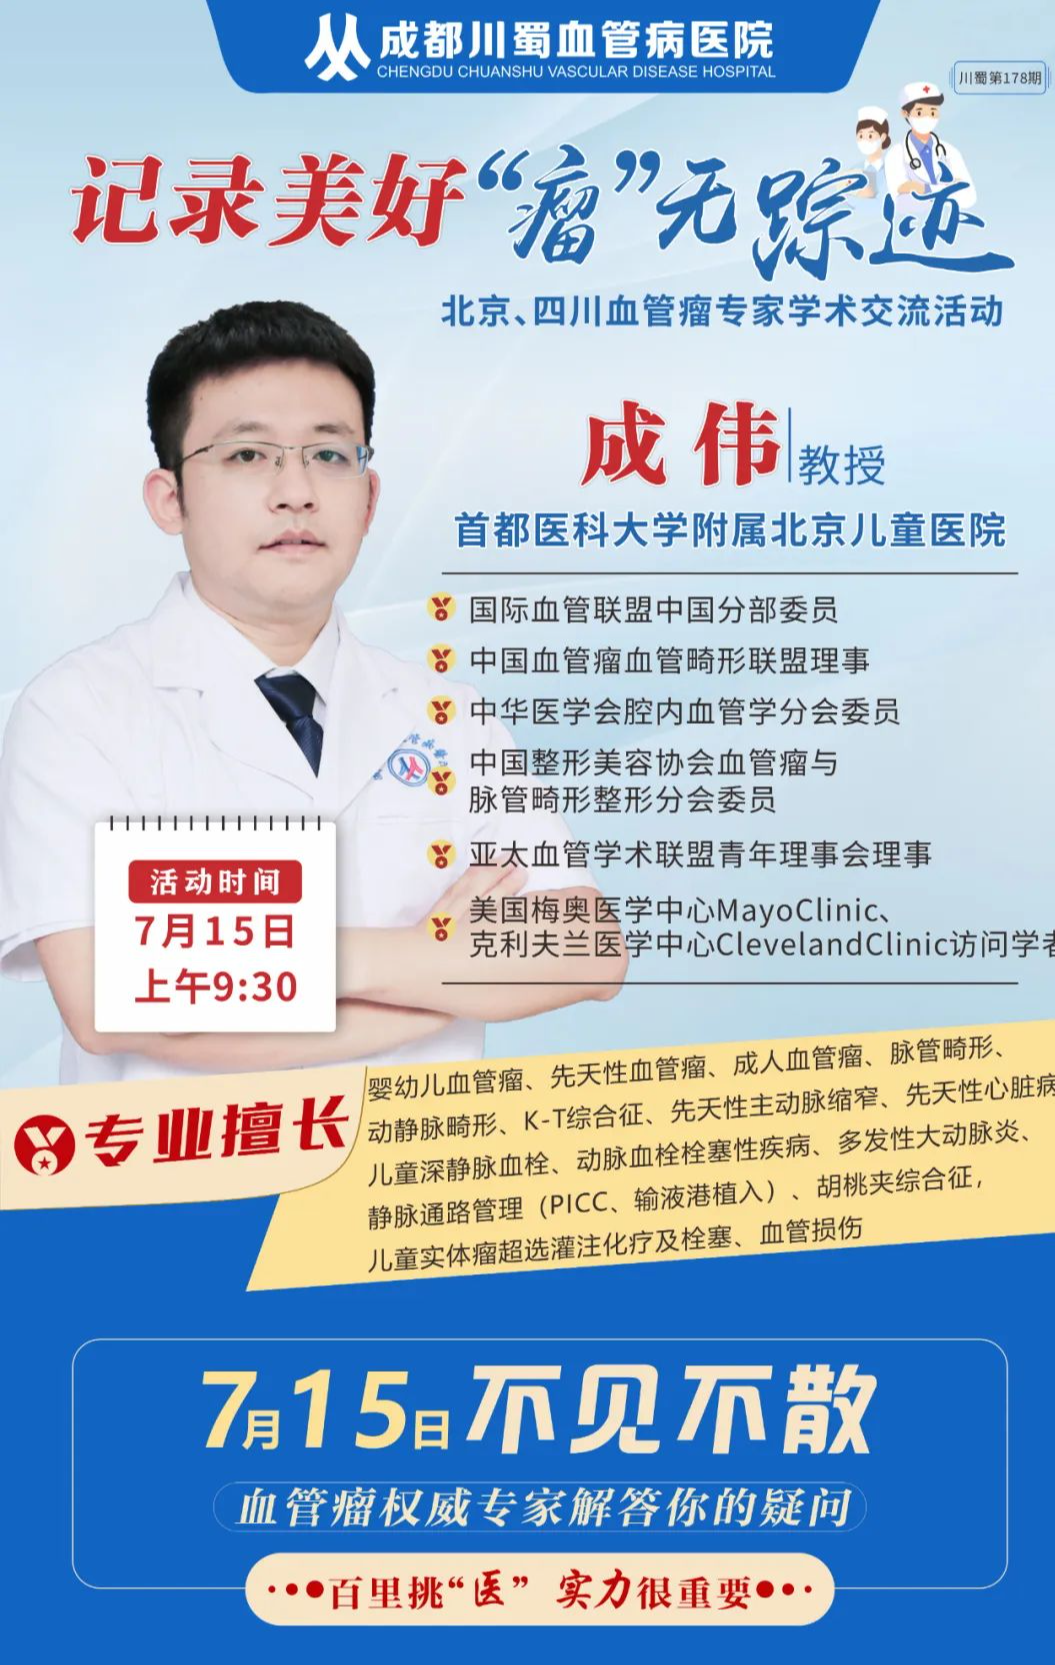 关于北京儿童医院擅长的科室黄牛联系方式的信息